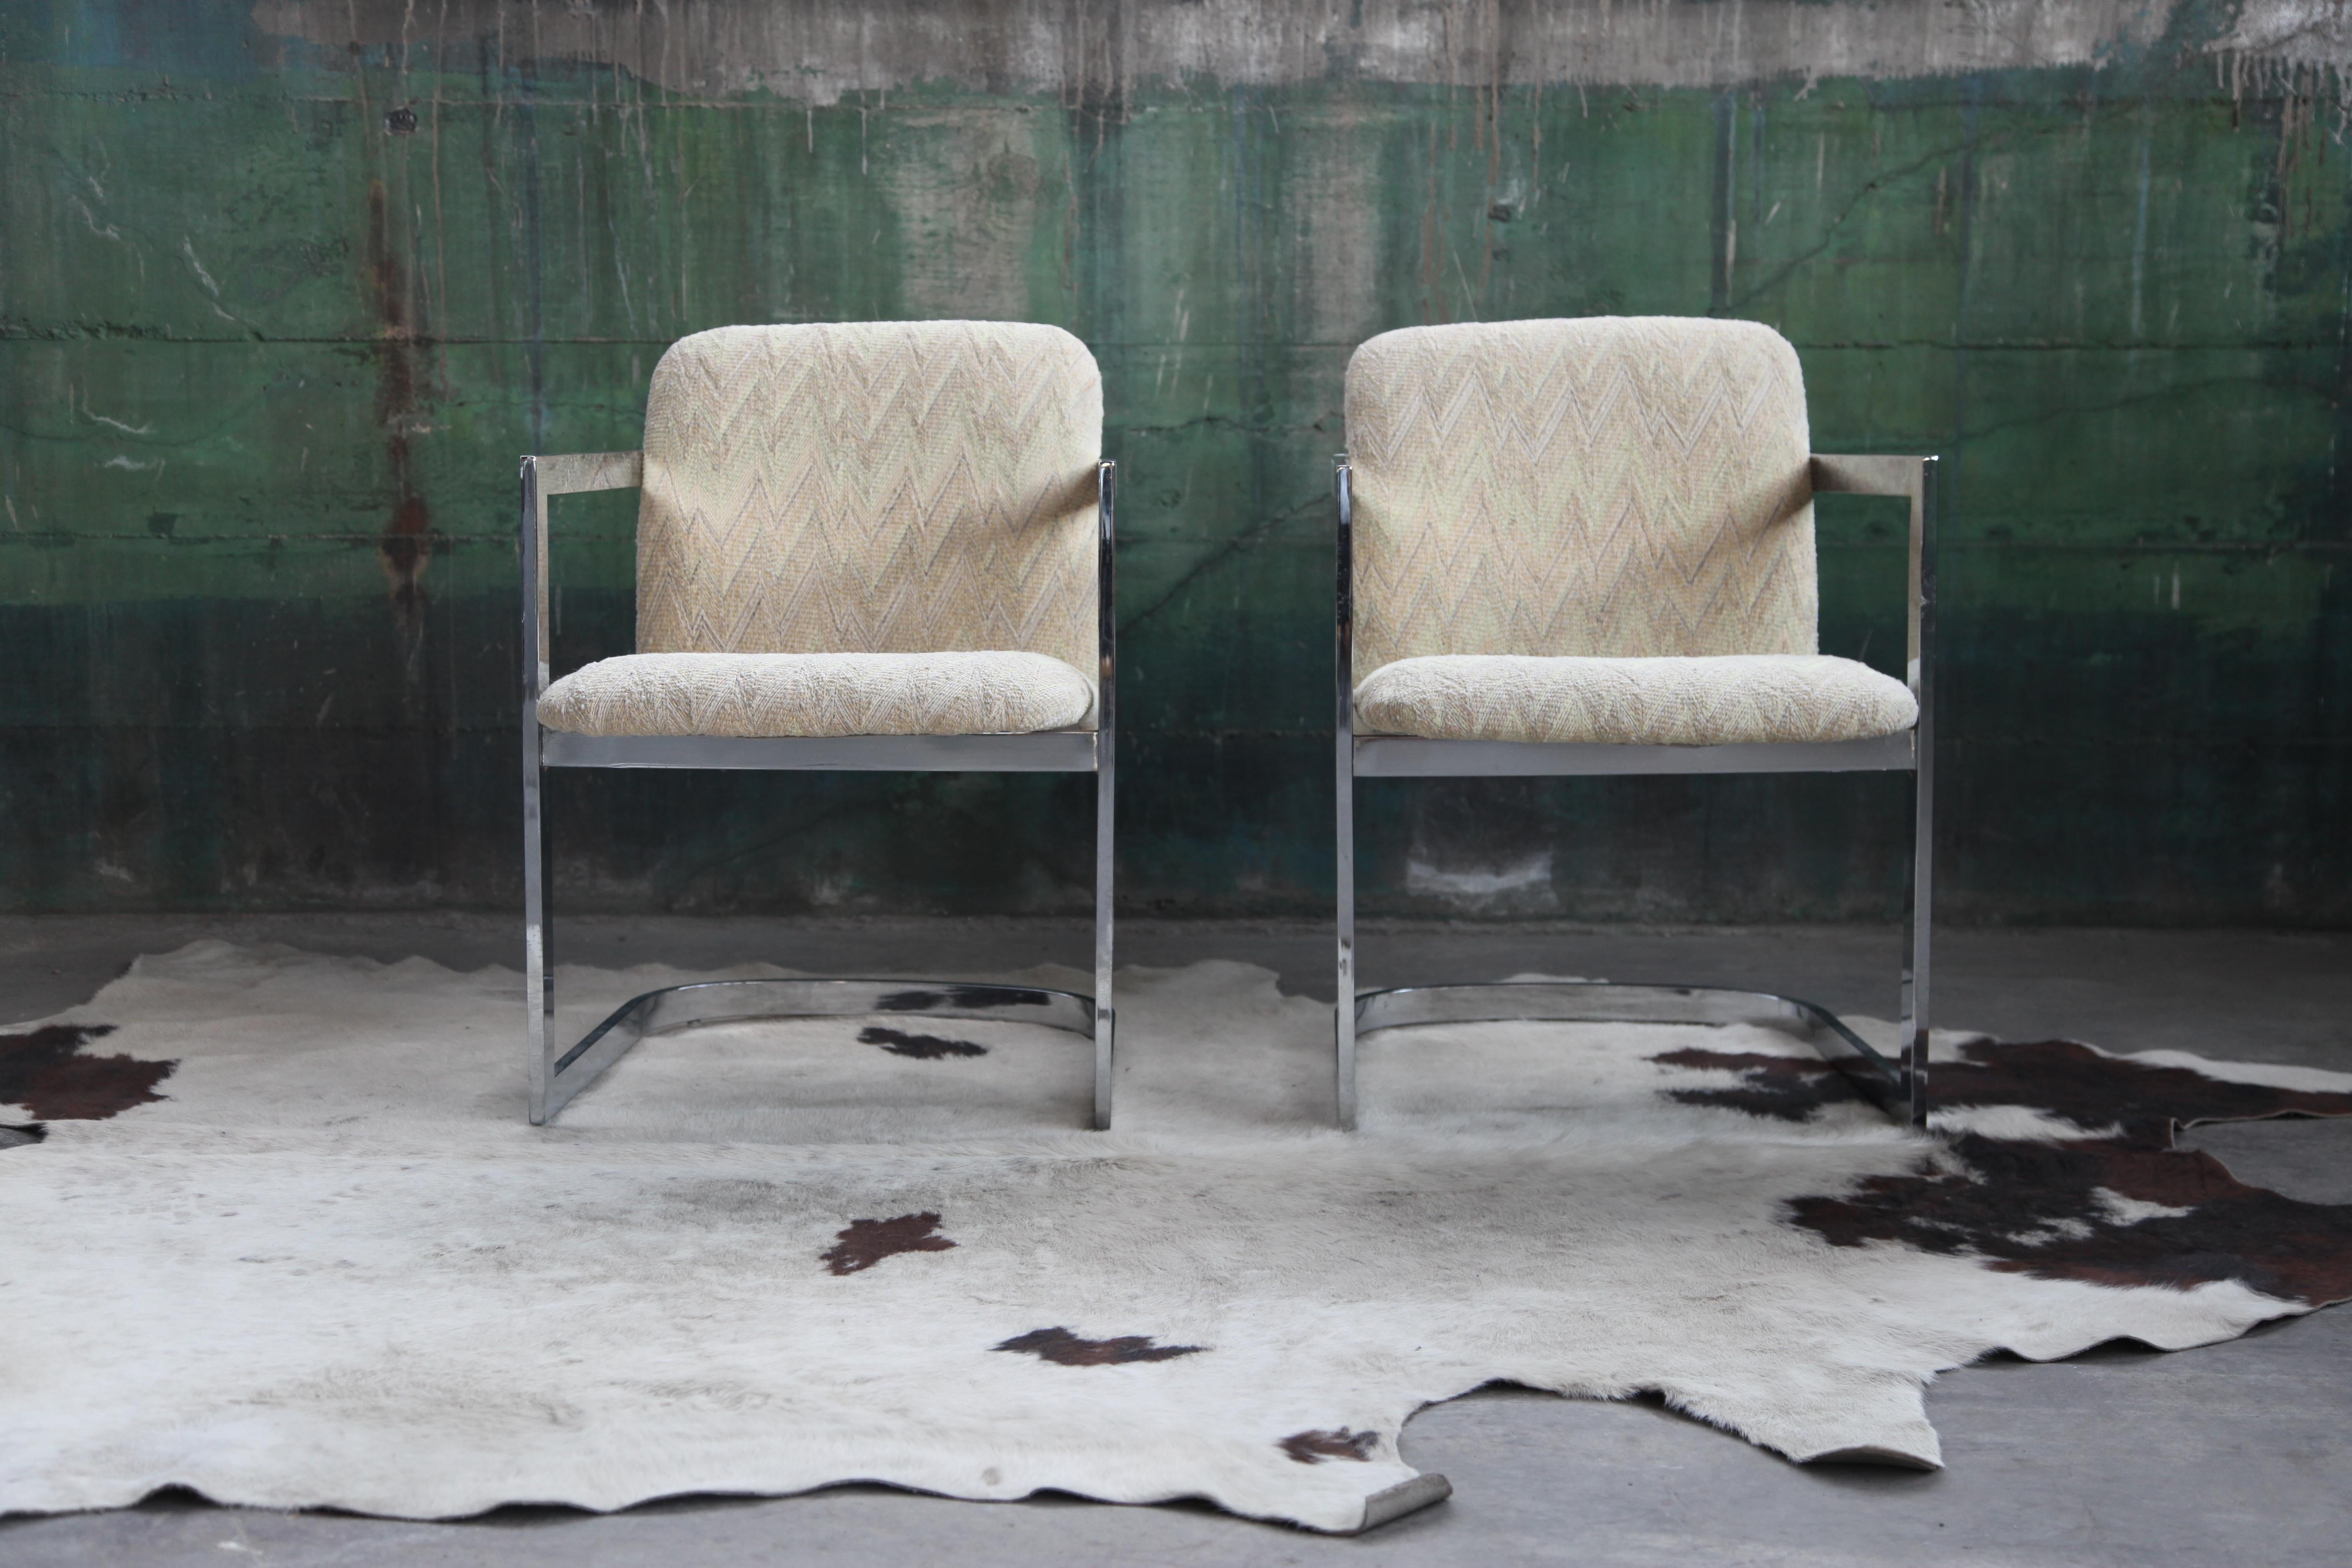 Une paire élégante et sexy de chaises chromées en porte-à-faux conçues par l'emblématique designer Milo Baughman. Chaque chaise est vendue individuellement et il y en a deux de disponibles.

Des lignes épurées, modernes et sculpturales se dégagent